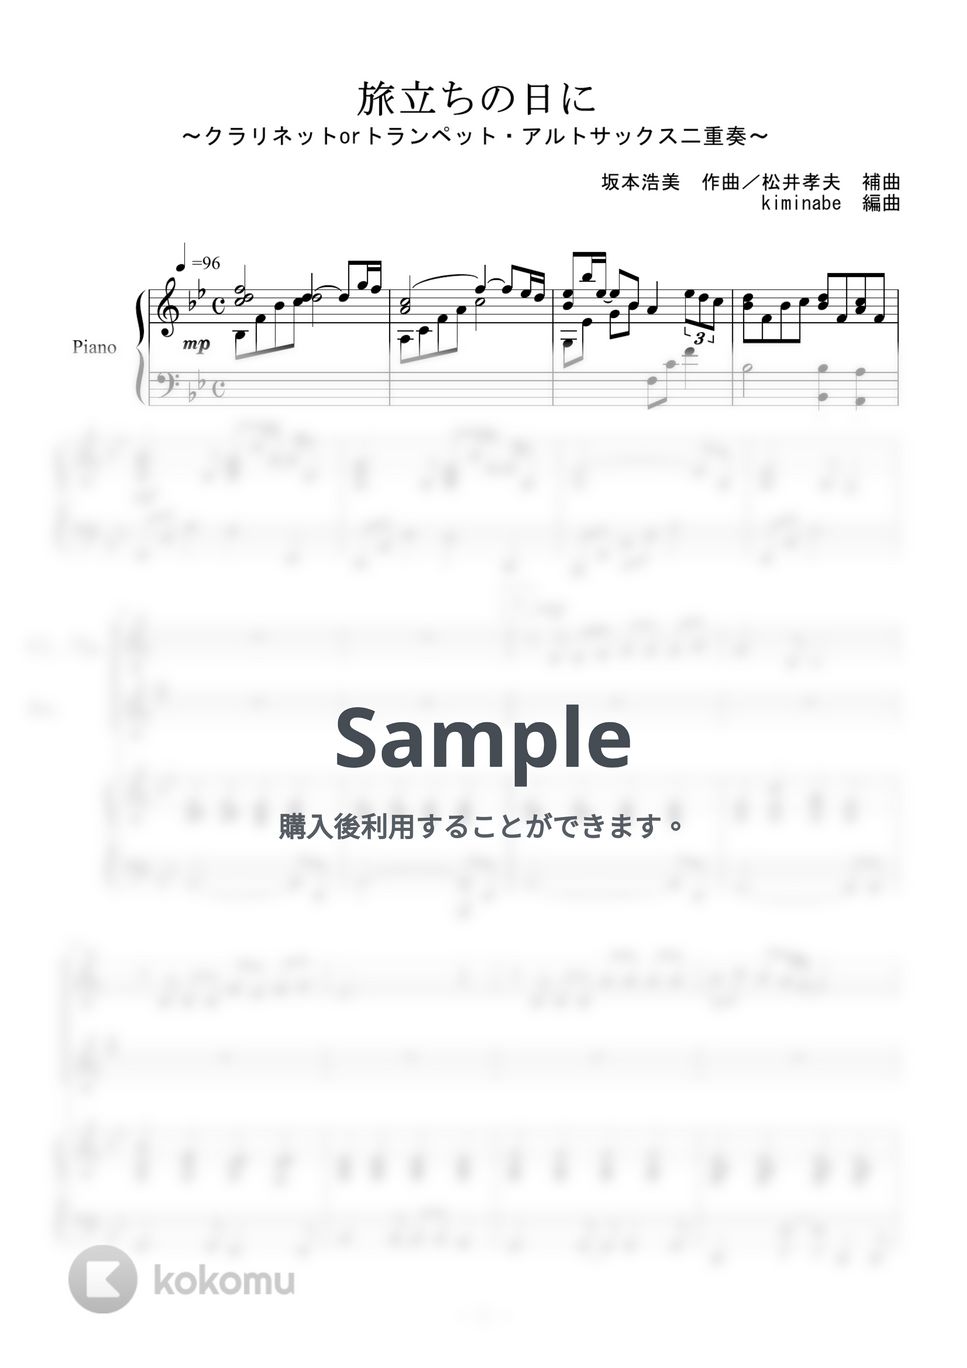 坂本浩美 - 旅立ちの日に (クラリネットorトランペット・アルトサックス二重奏) by kiminabe